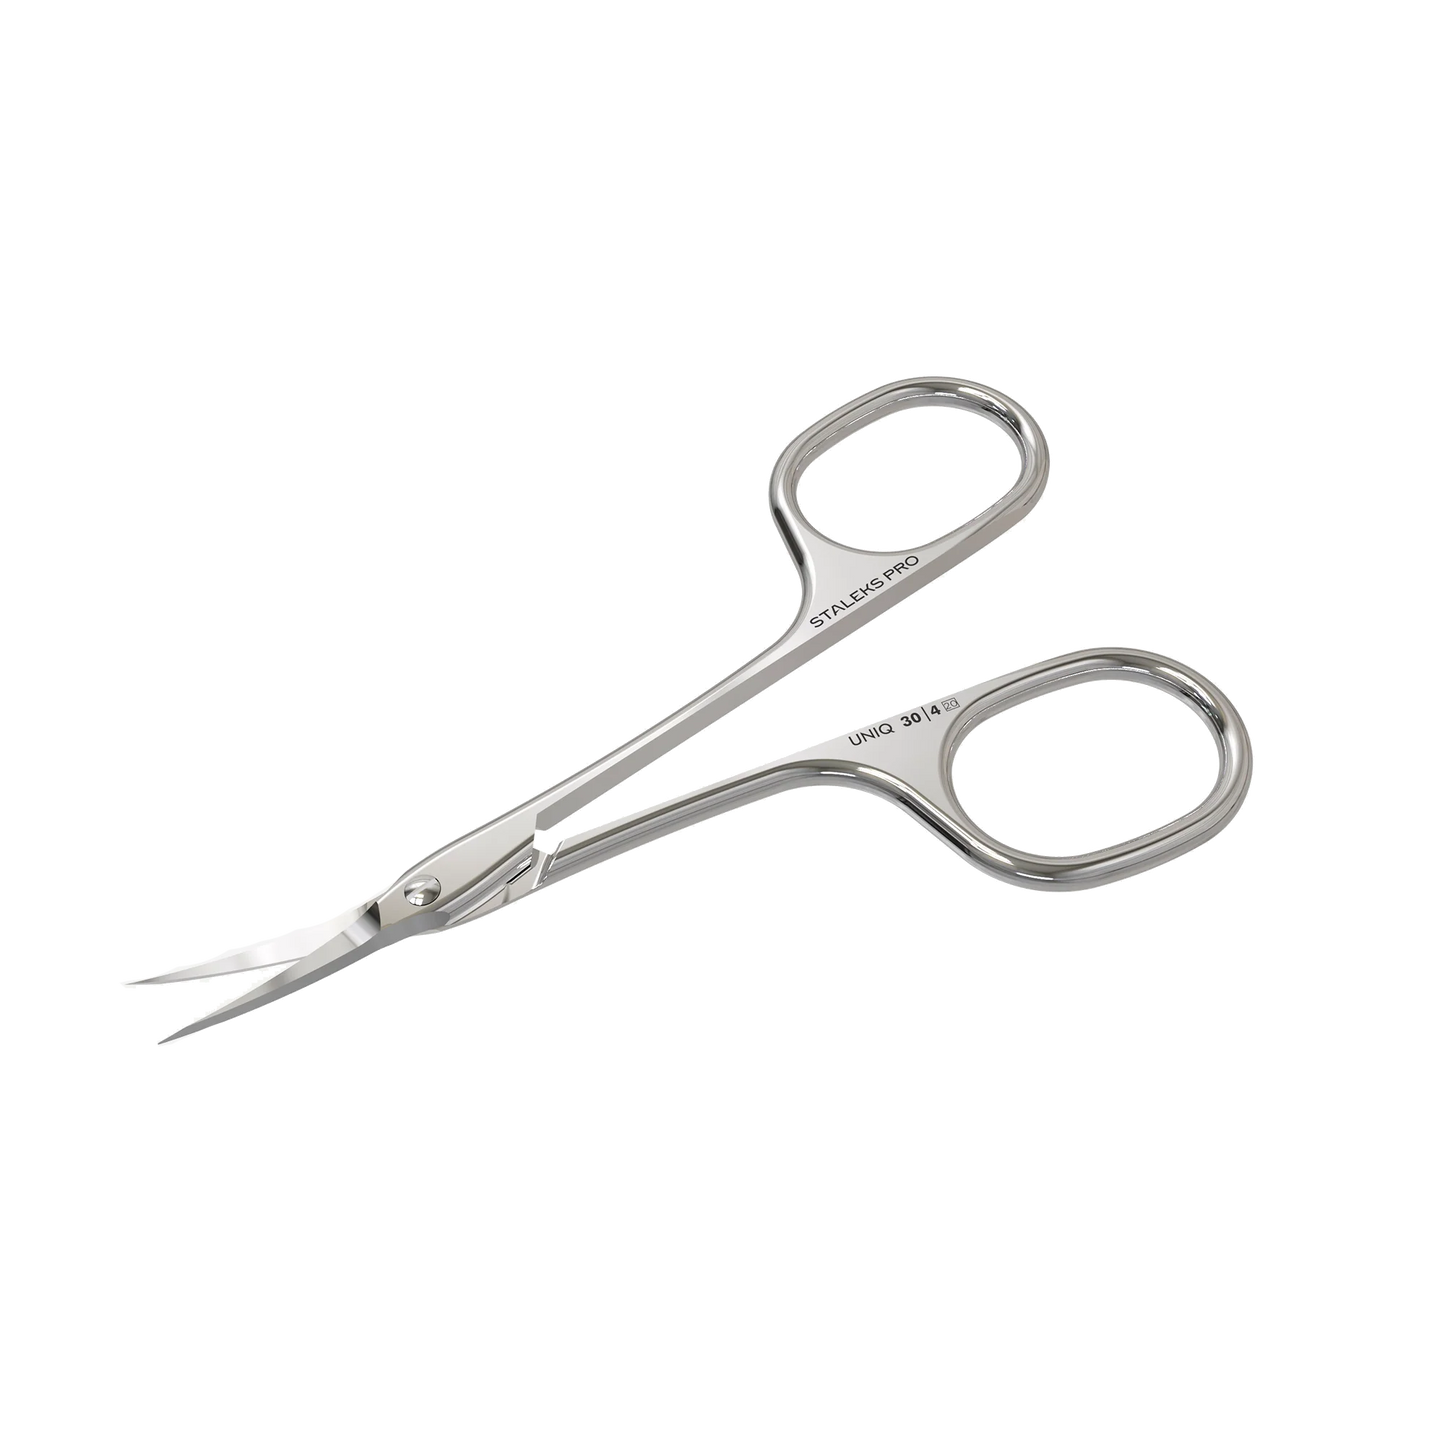 Professional Cuticle Scissors "Asymmetric" UNIQ 30 TYPE 4 -SQ-30/4